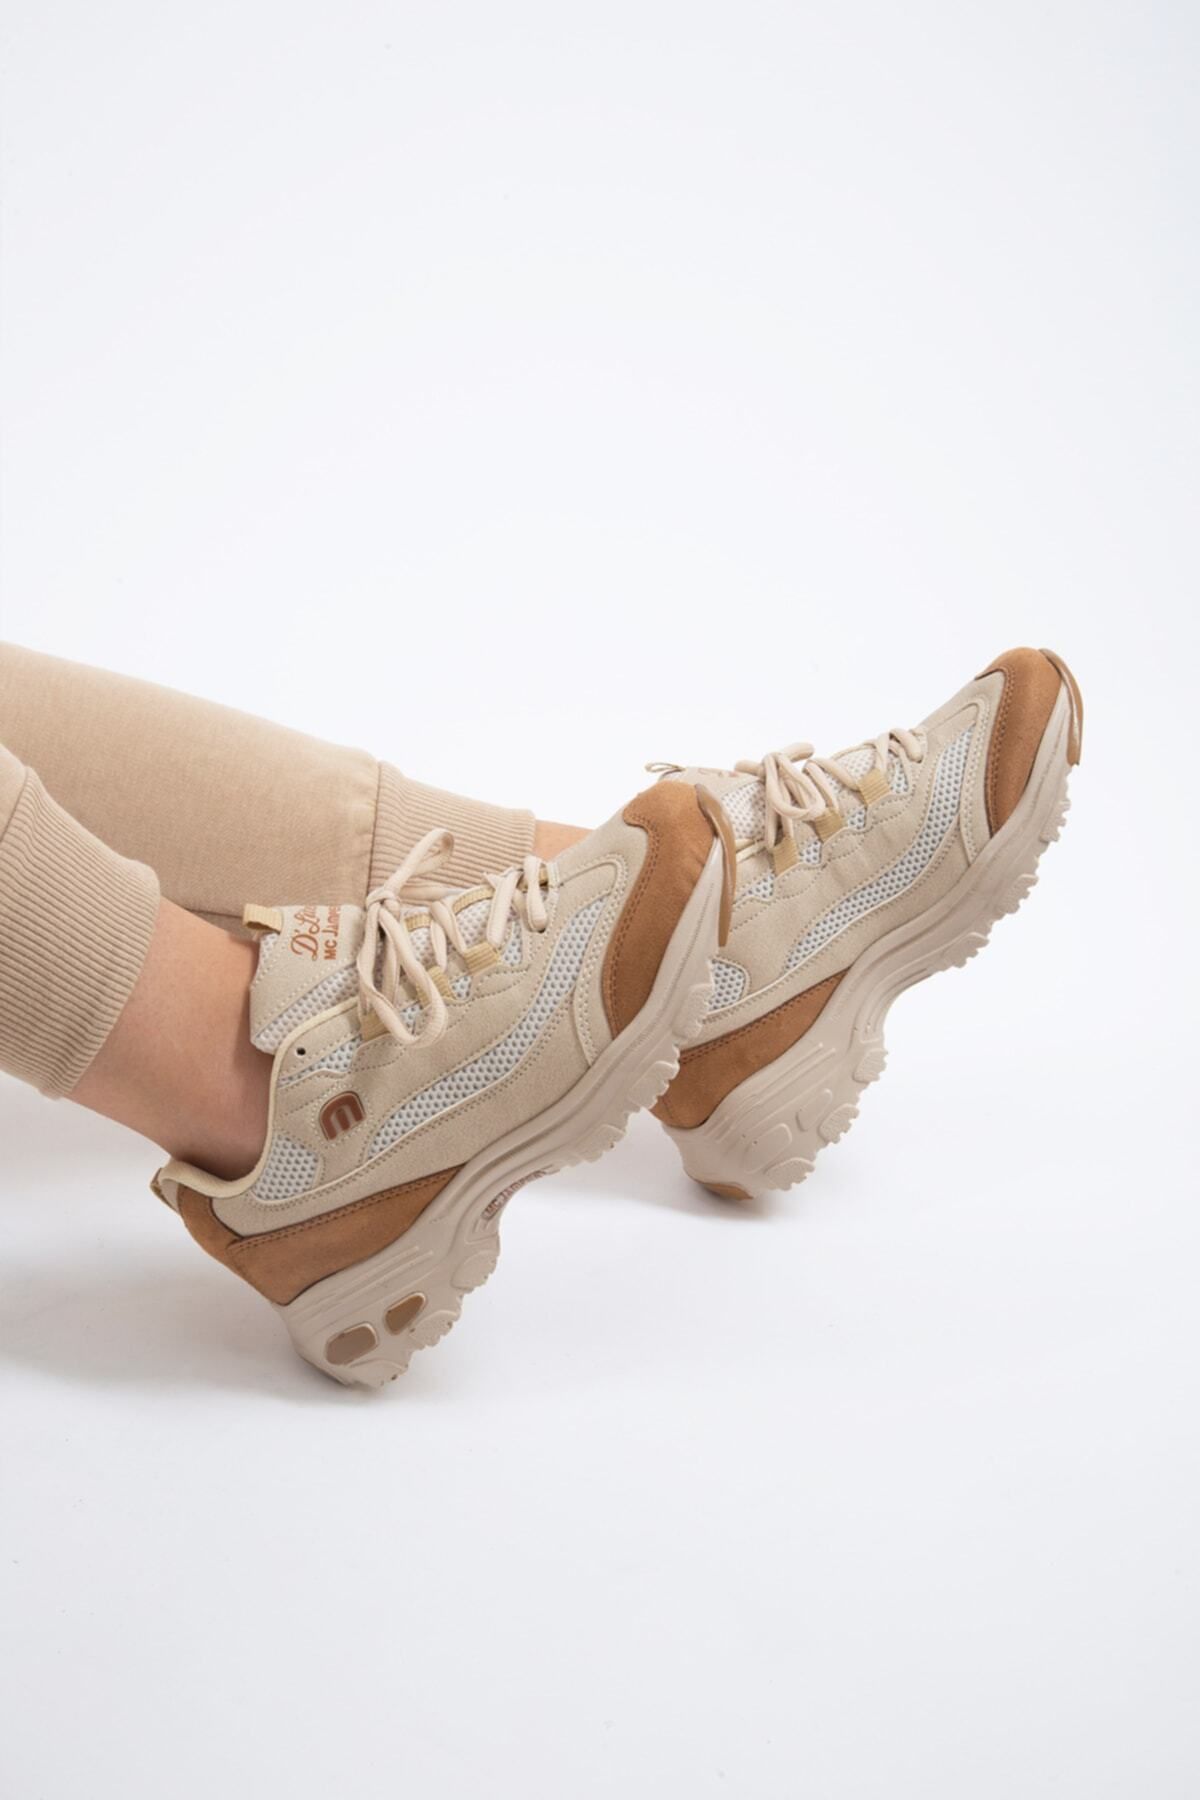 Tomsking Kadın Bej Sneaker Günlük Spor Ayakkabı 1901